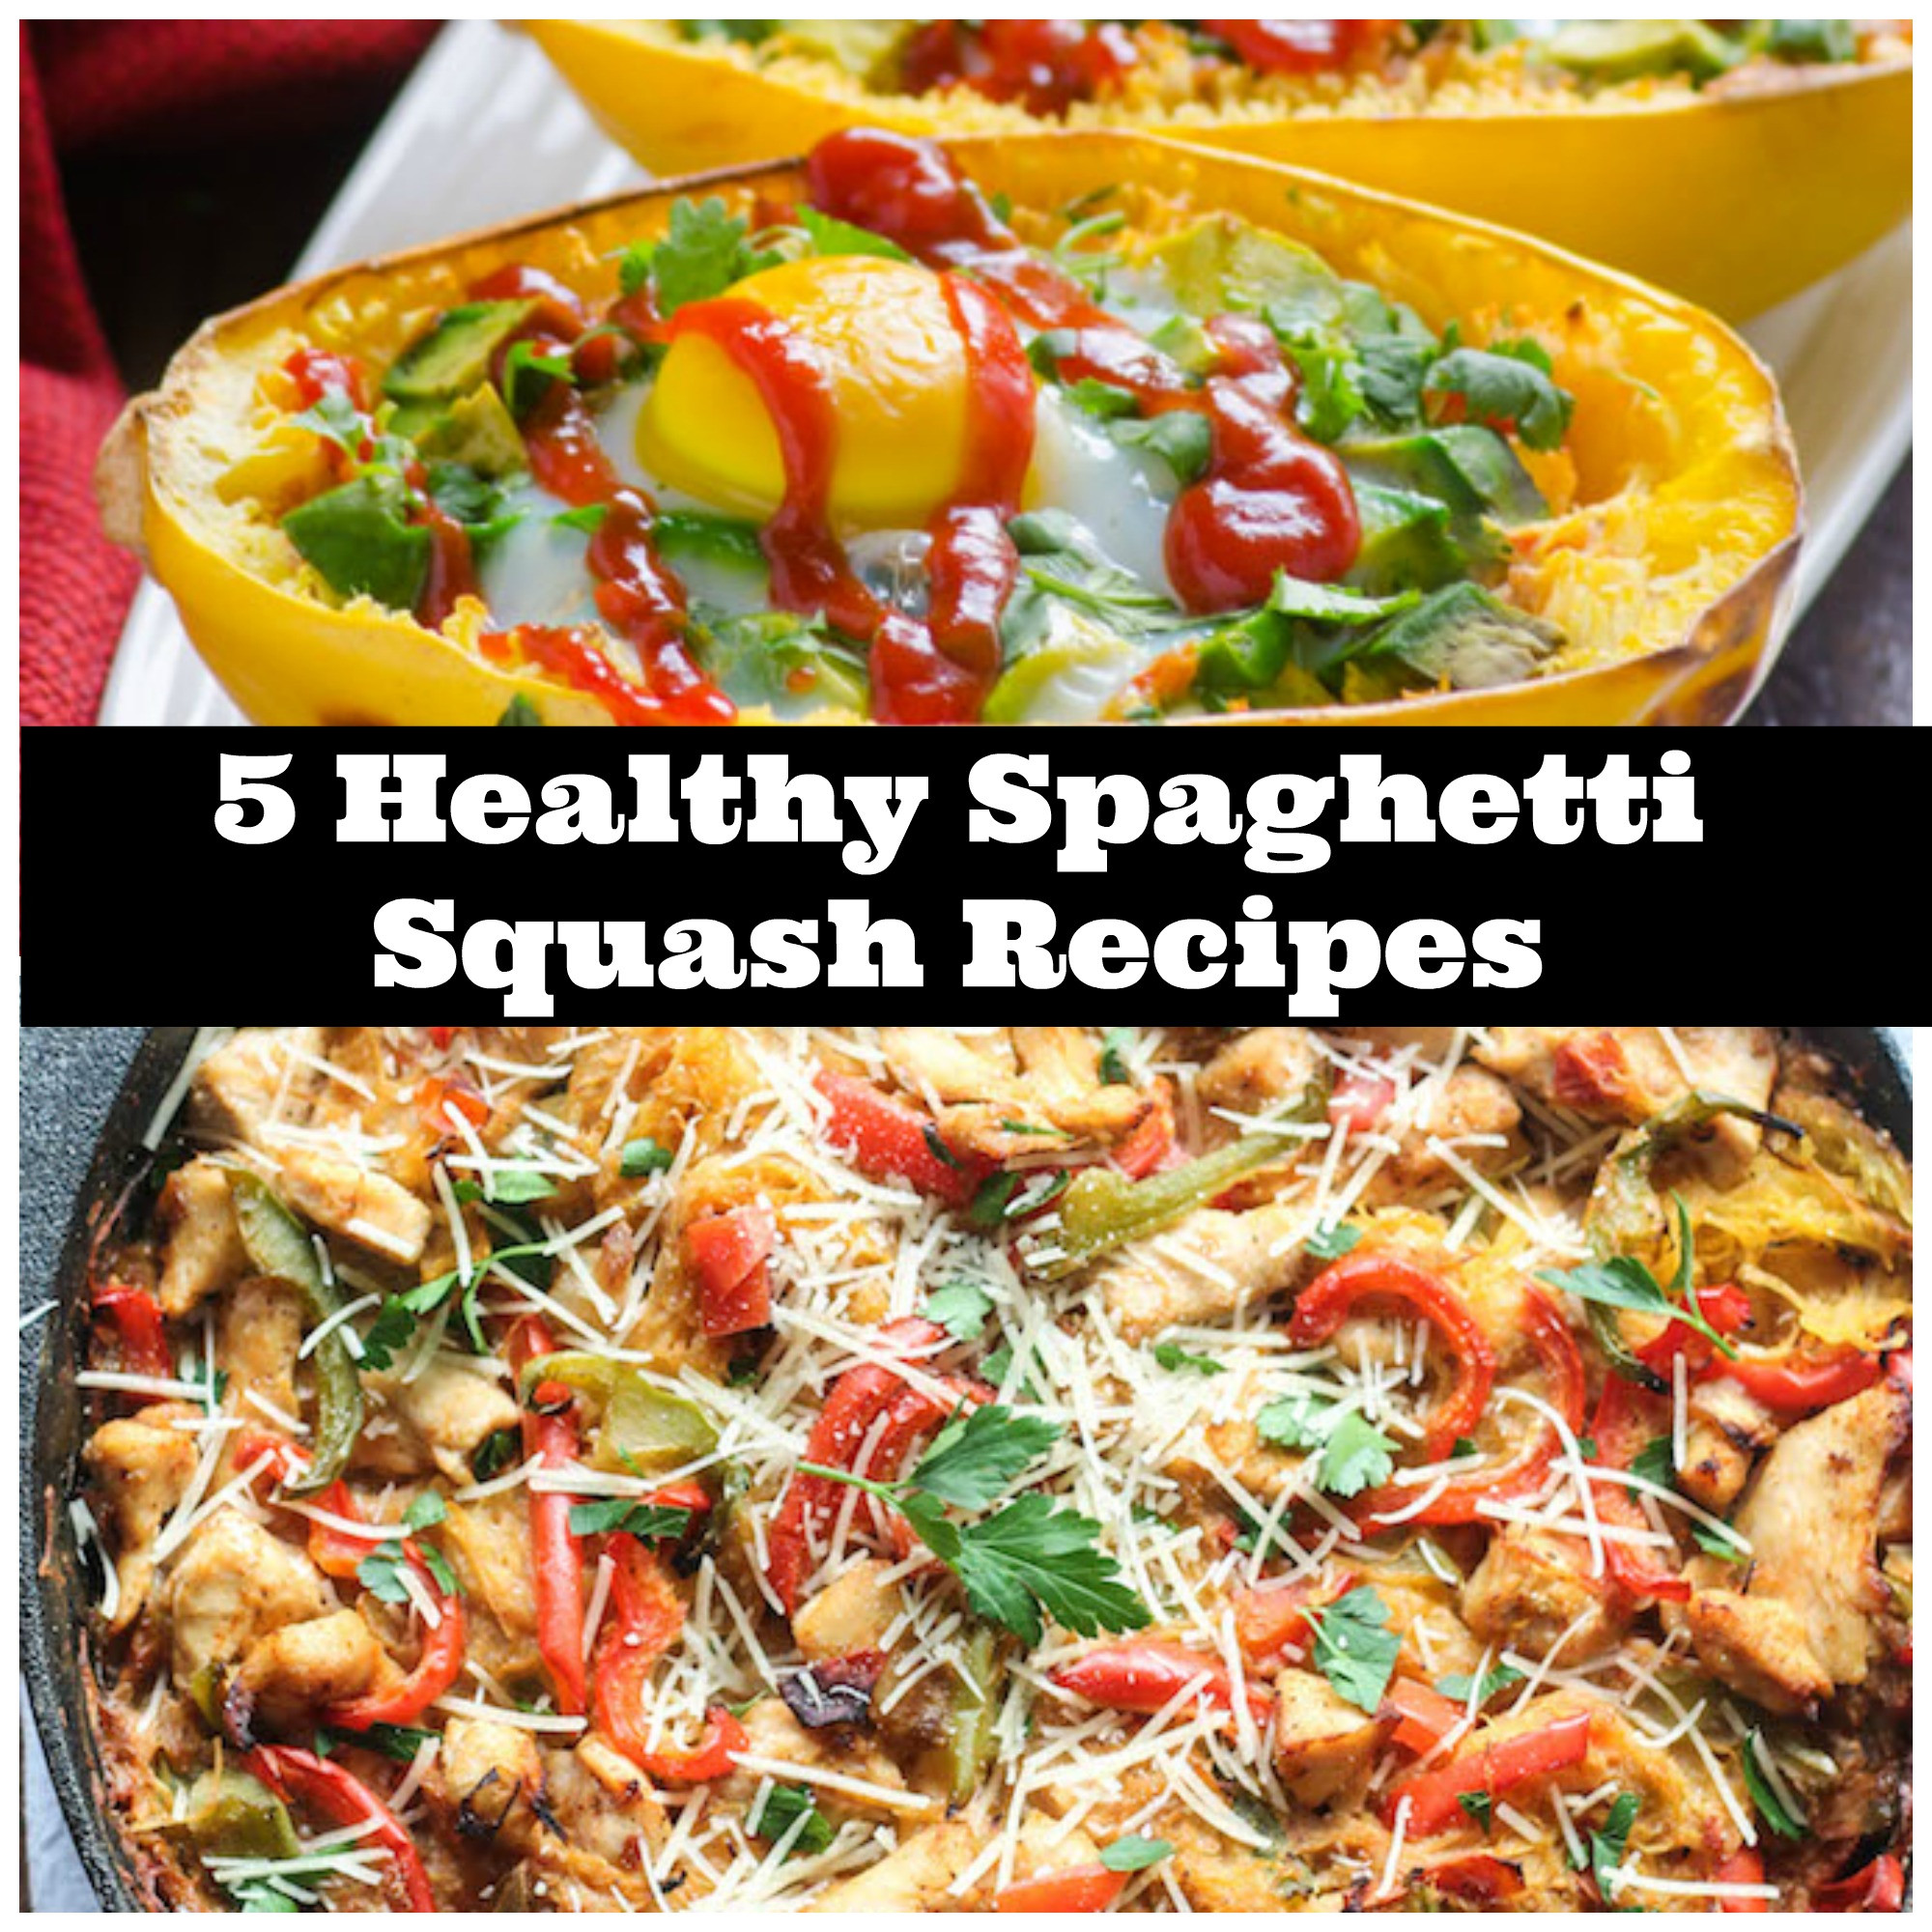 Is Spaghetti Squash Healthy
 5 Healthy Spaghetti Squash Recipes to Try